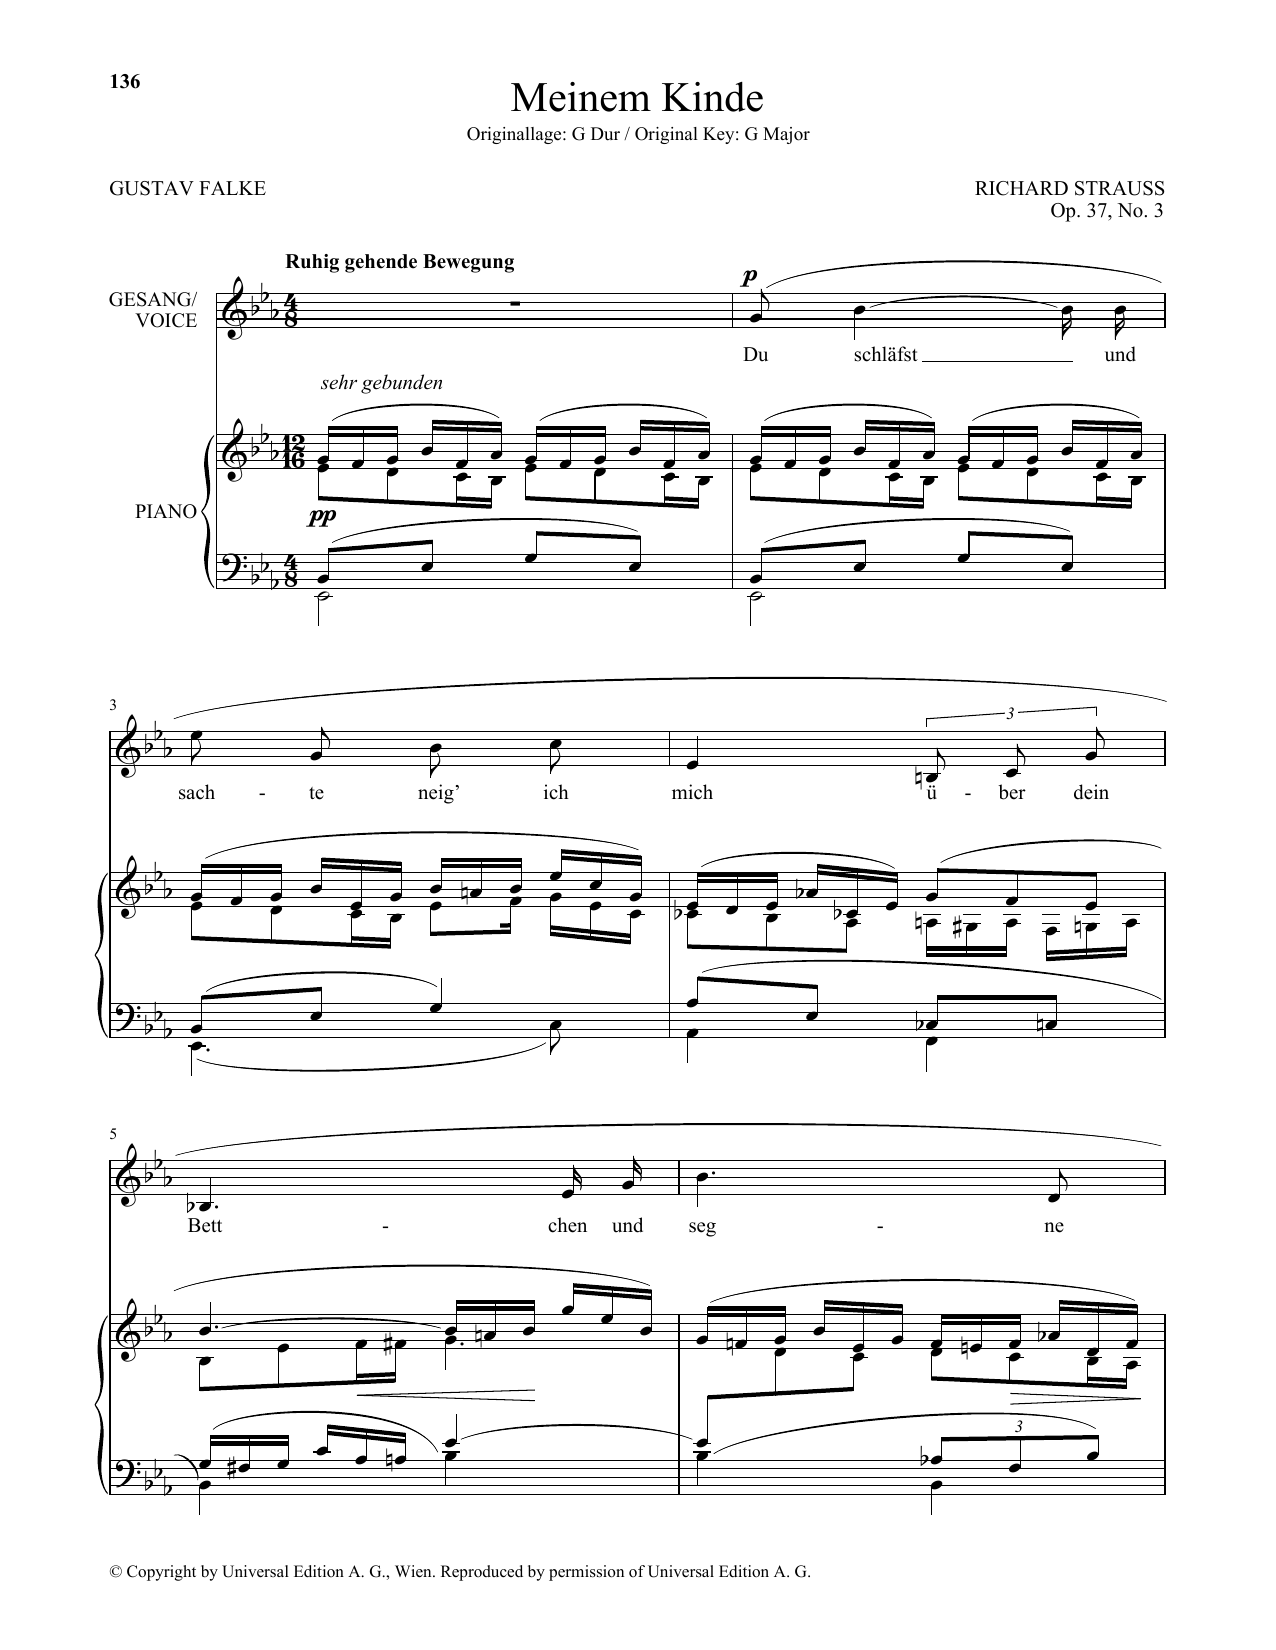 Download Richard Strauss Meinem Kinde (Low Voice) Sheet Music